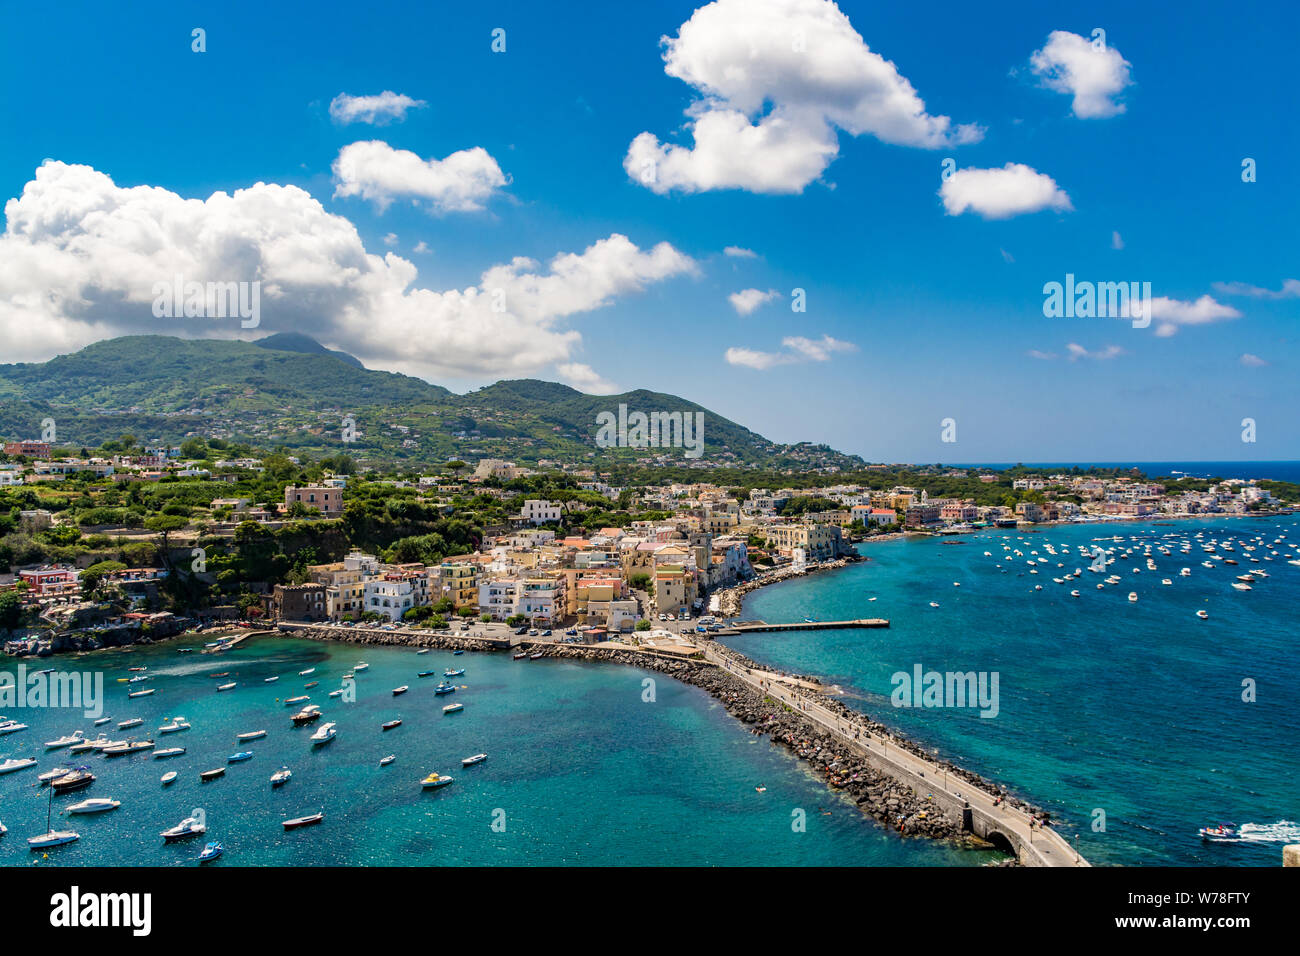 Amazing cityscape of Ischia Ponte, Ischia island, Italy Stock Photo